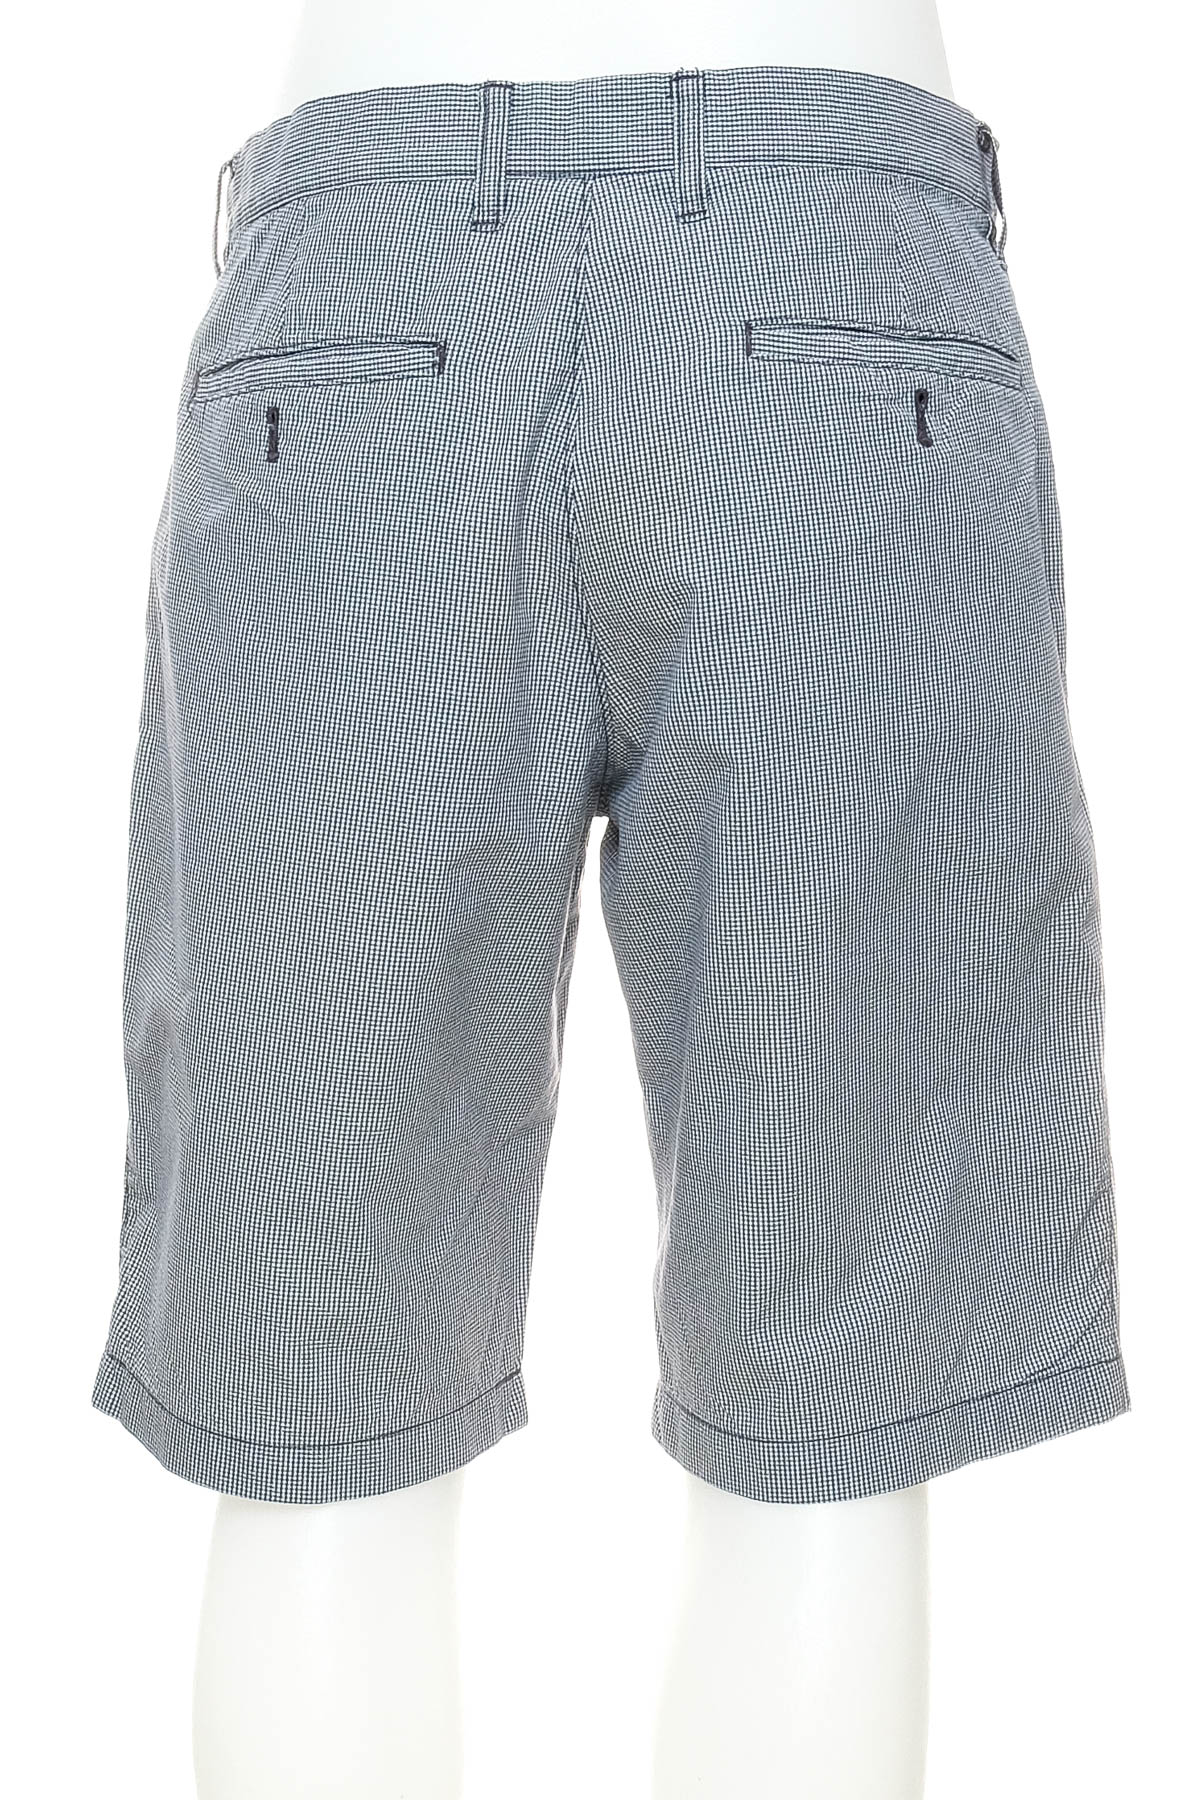 Men's shorts - UNIQLO - 1